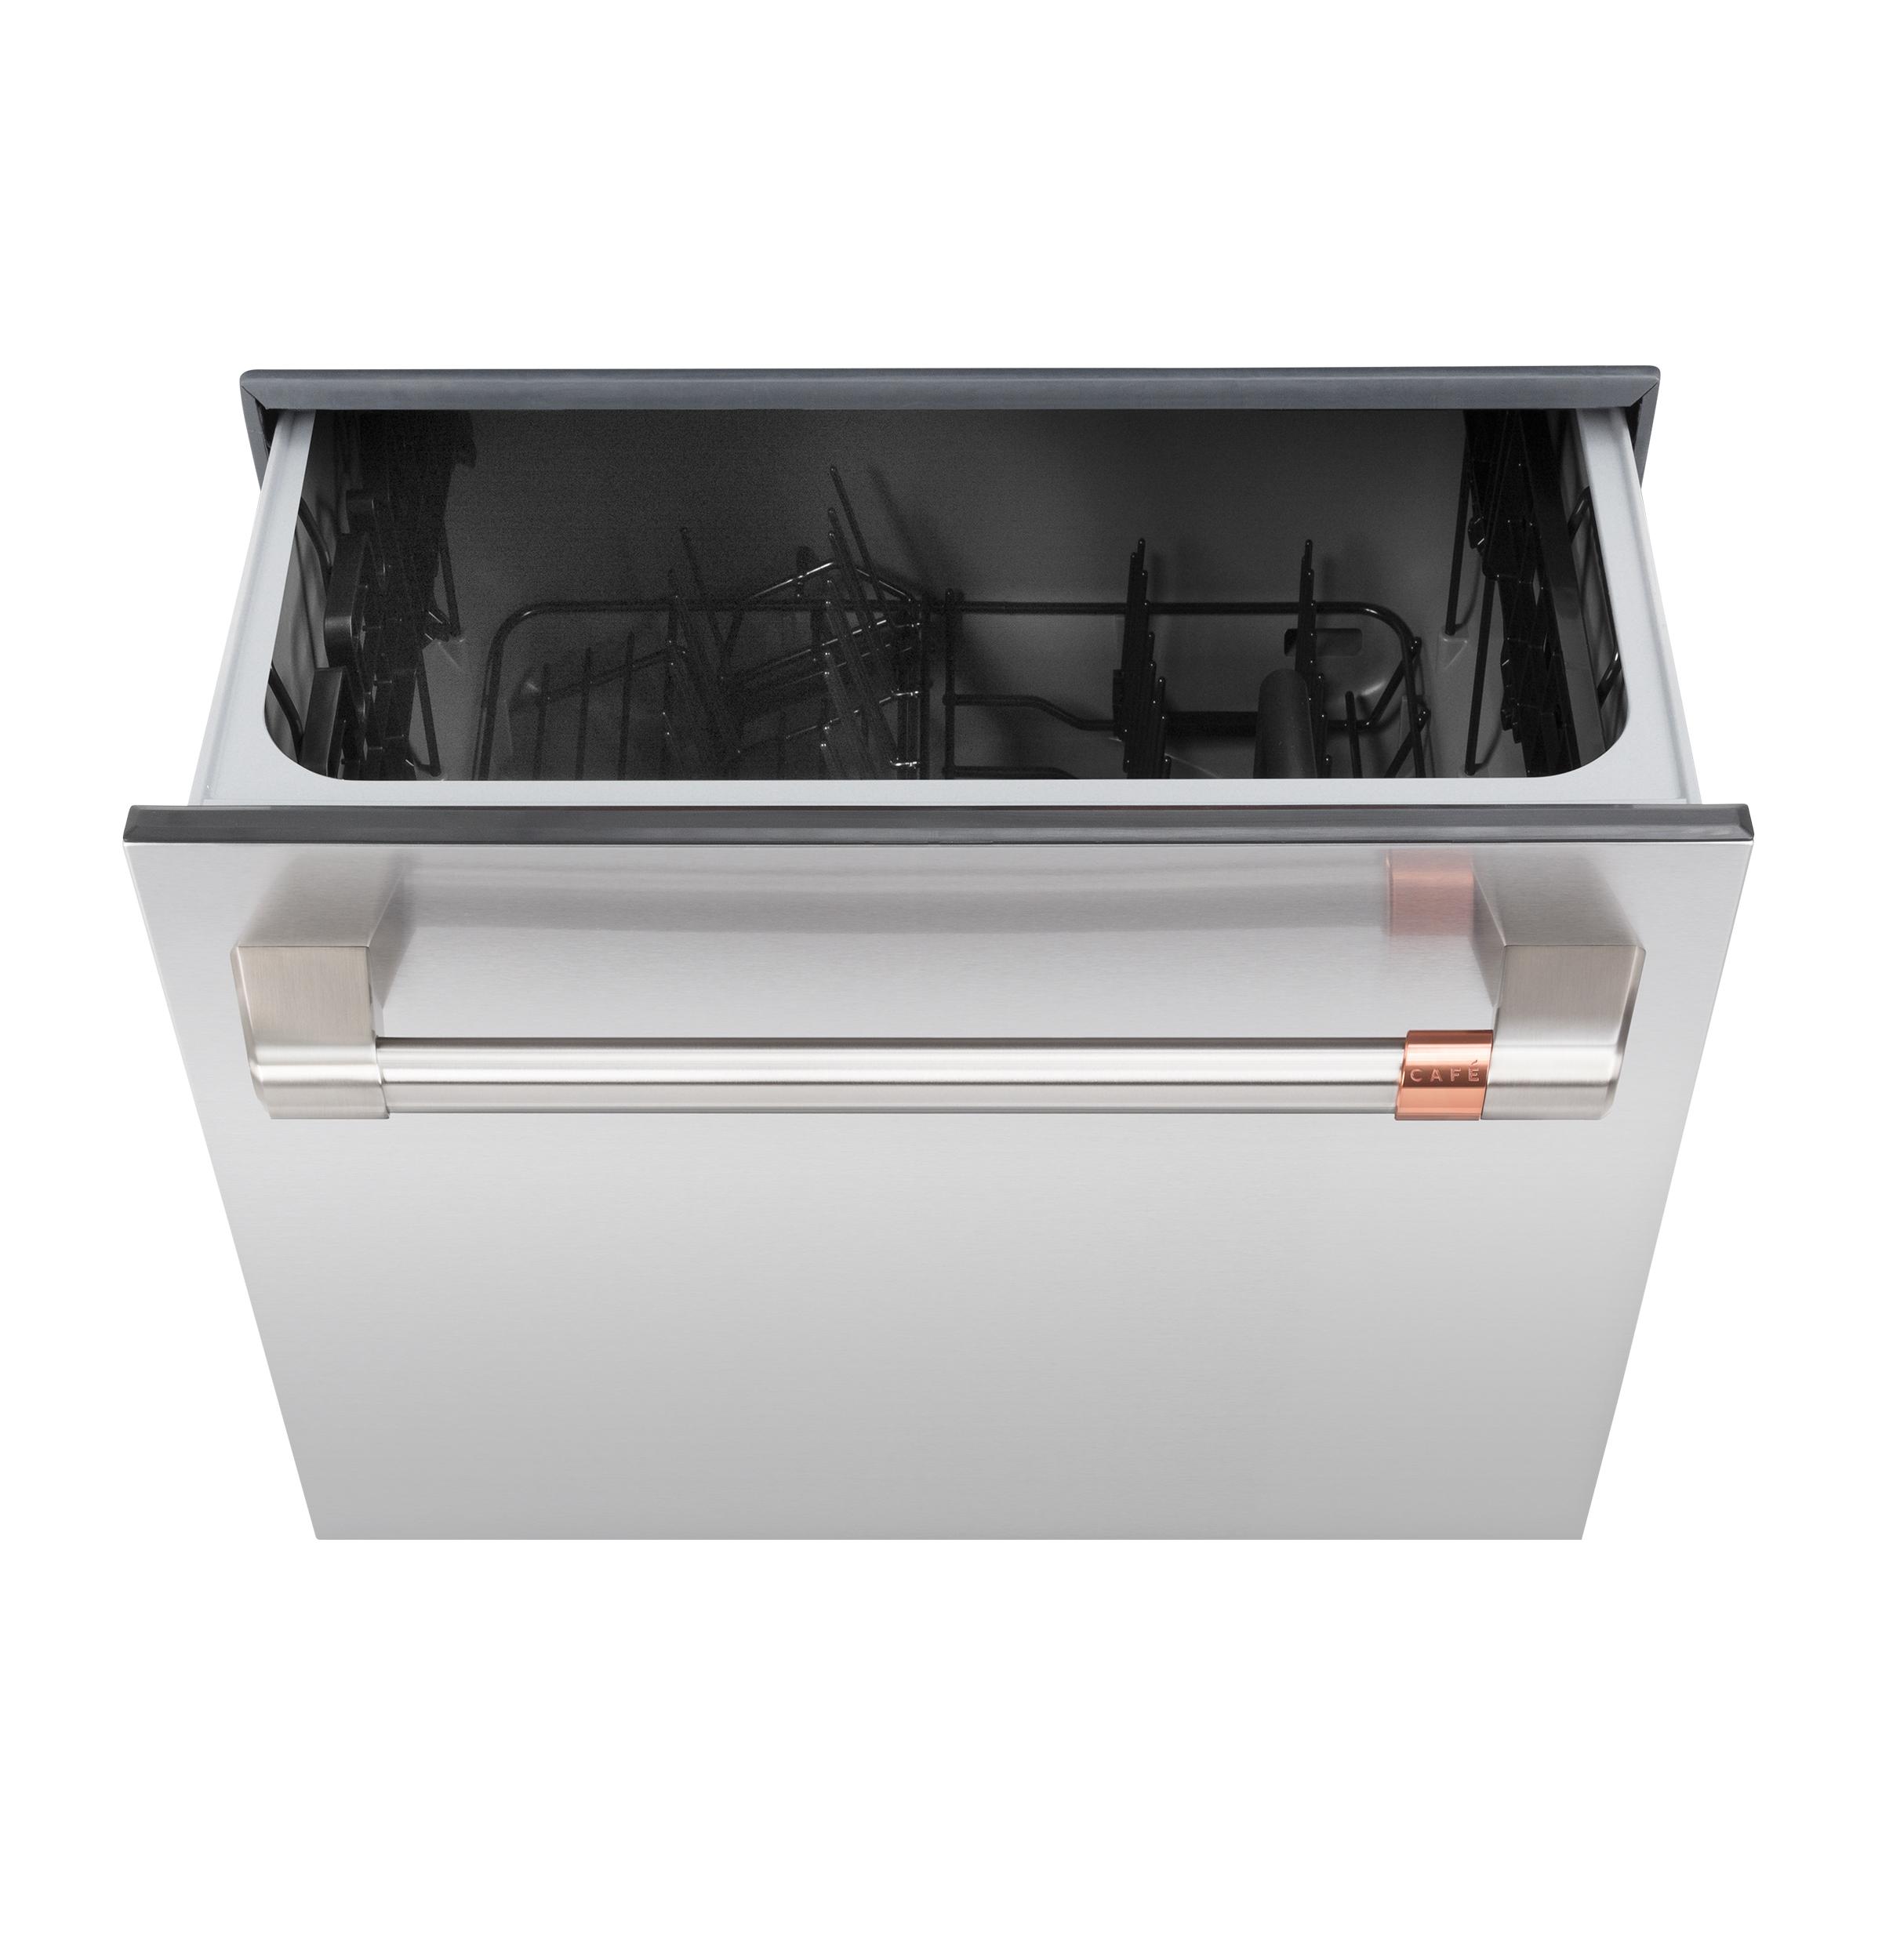 Cafe Caf(eback)™ ENERGY STAR Smart Single Drawer Dishwasher